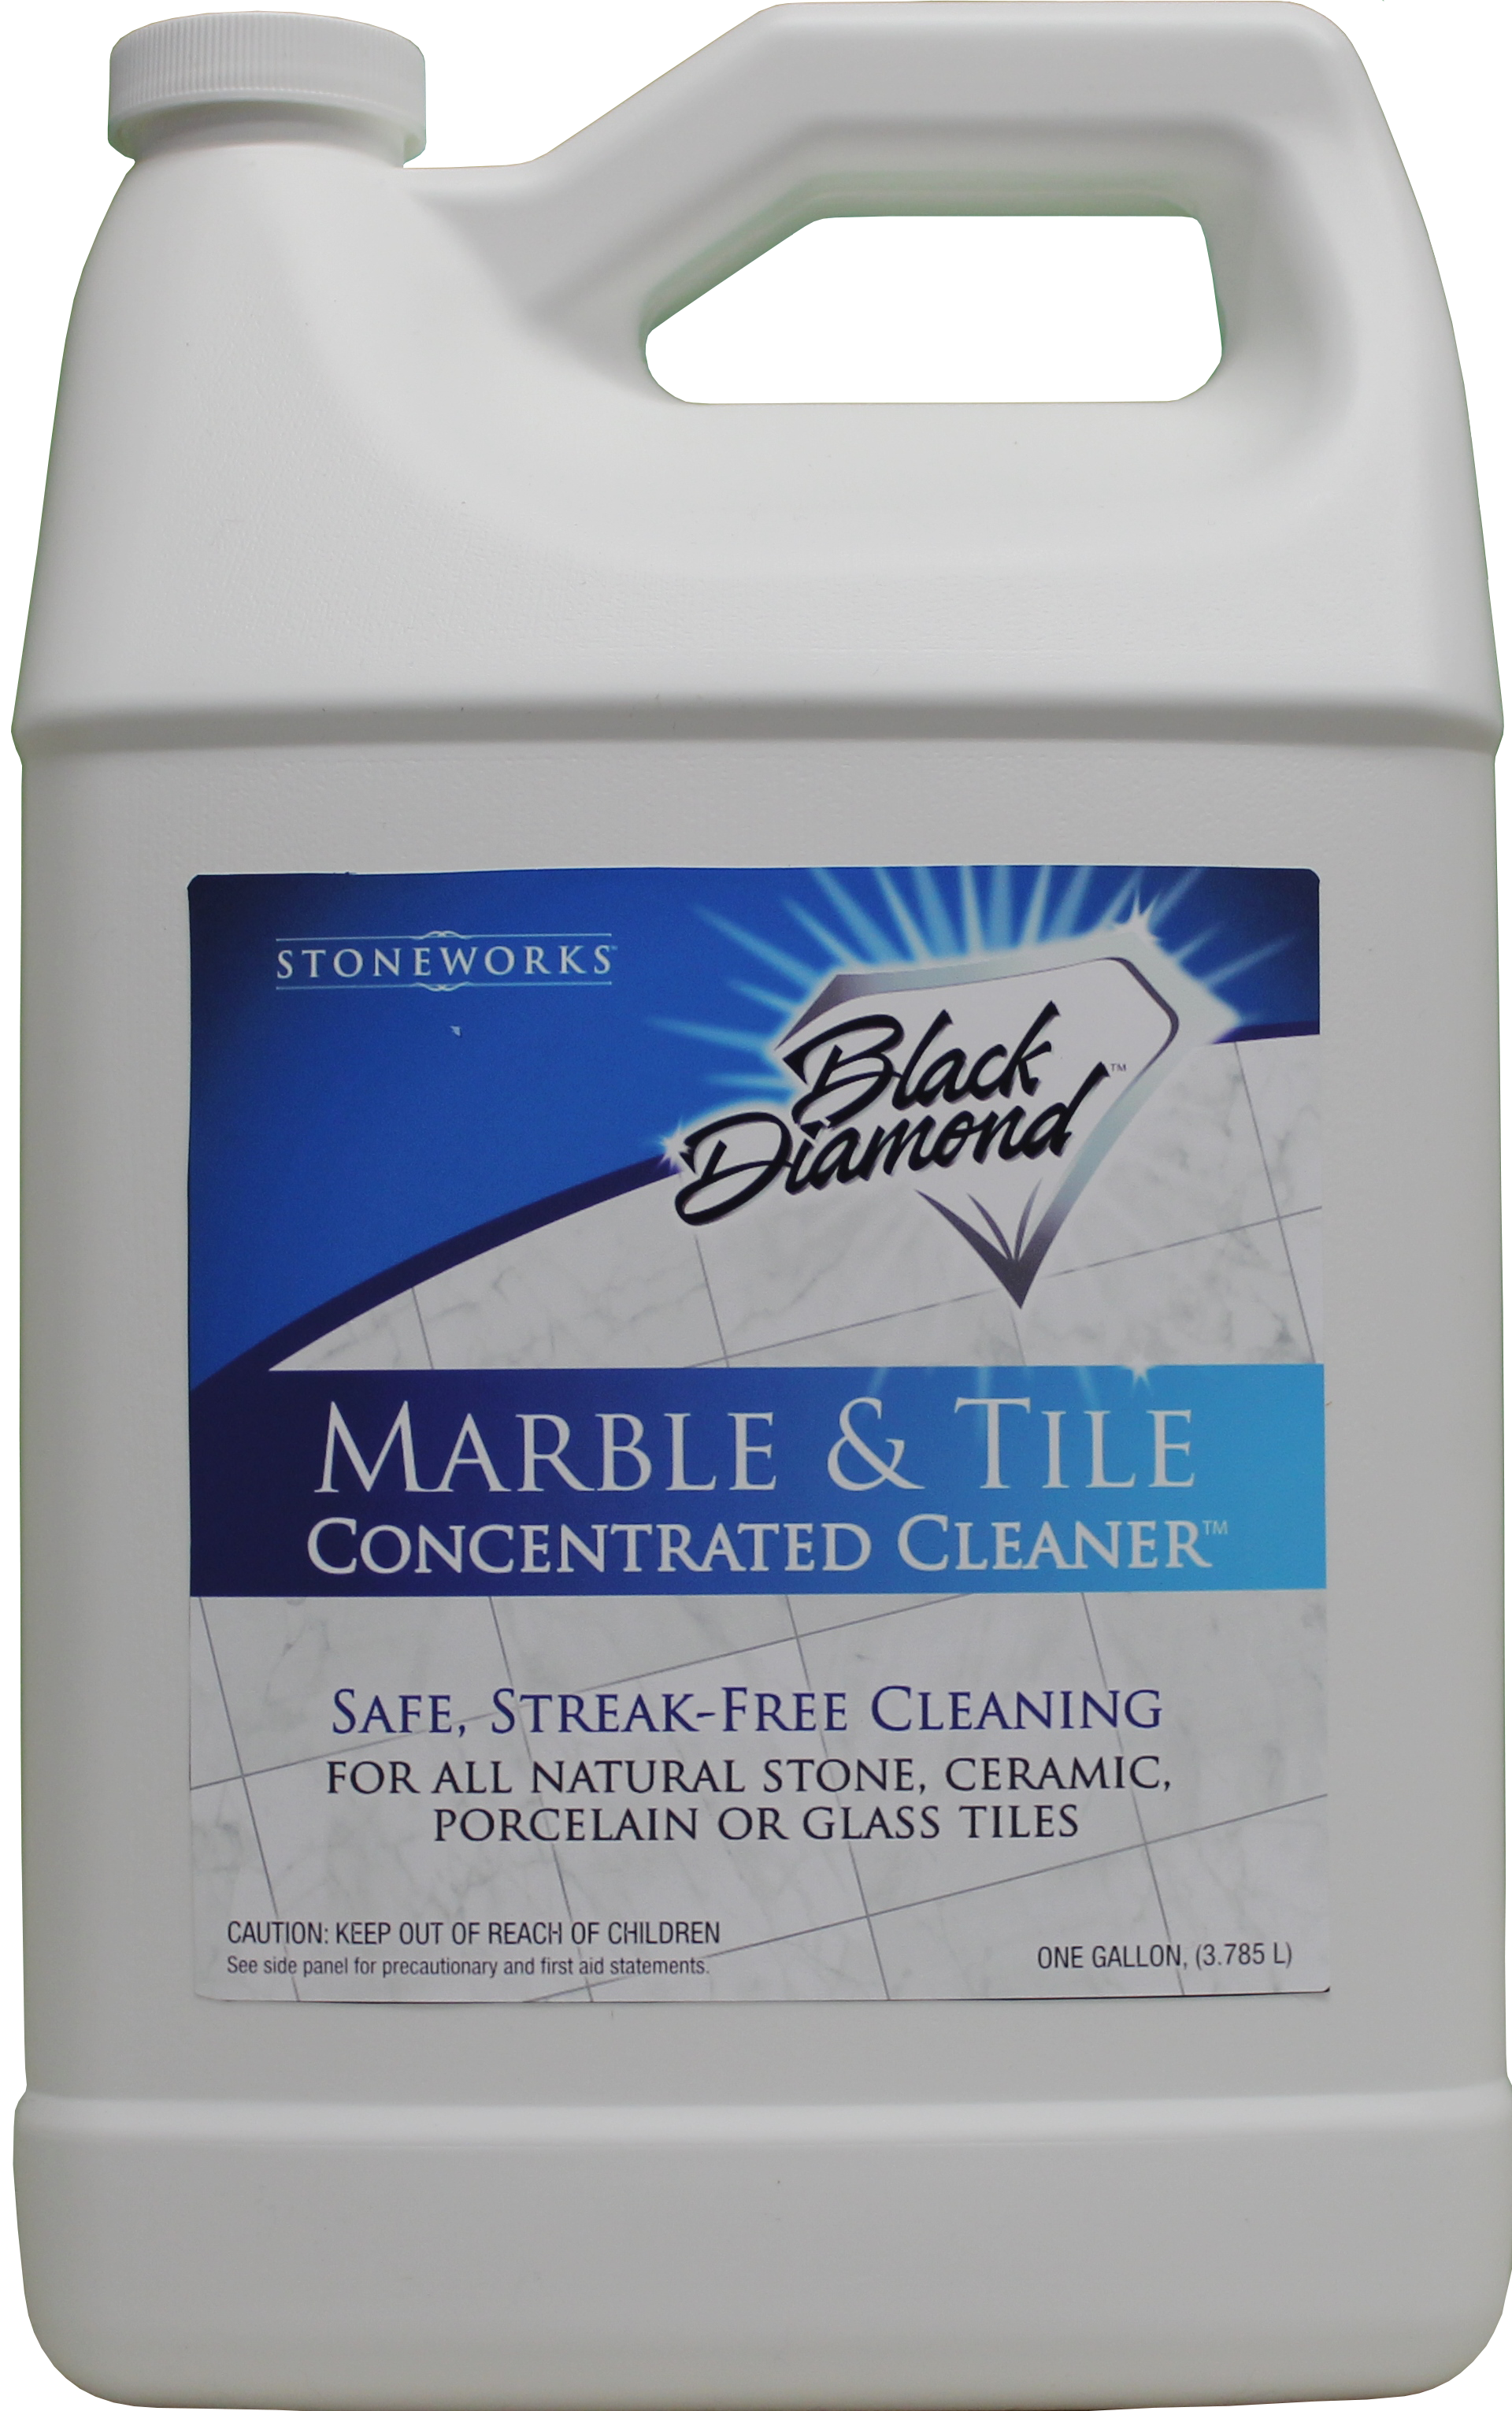 Black Diamond Marble & Tile Floor CLEANER. Great for Ceramic, Porcelain, Granite, Natural